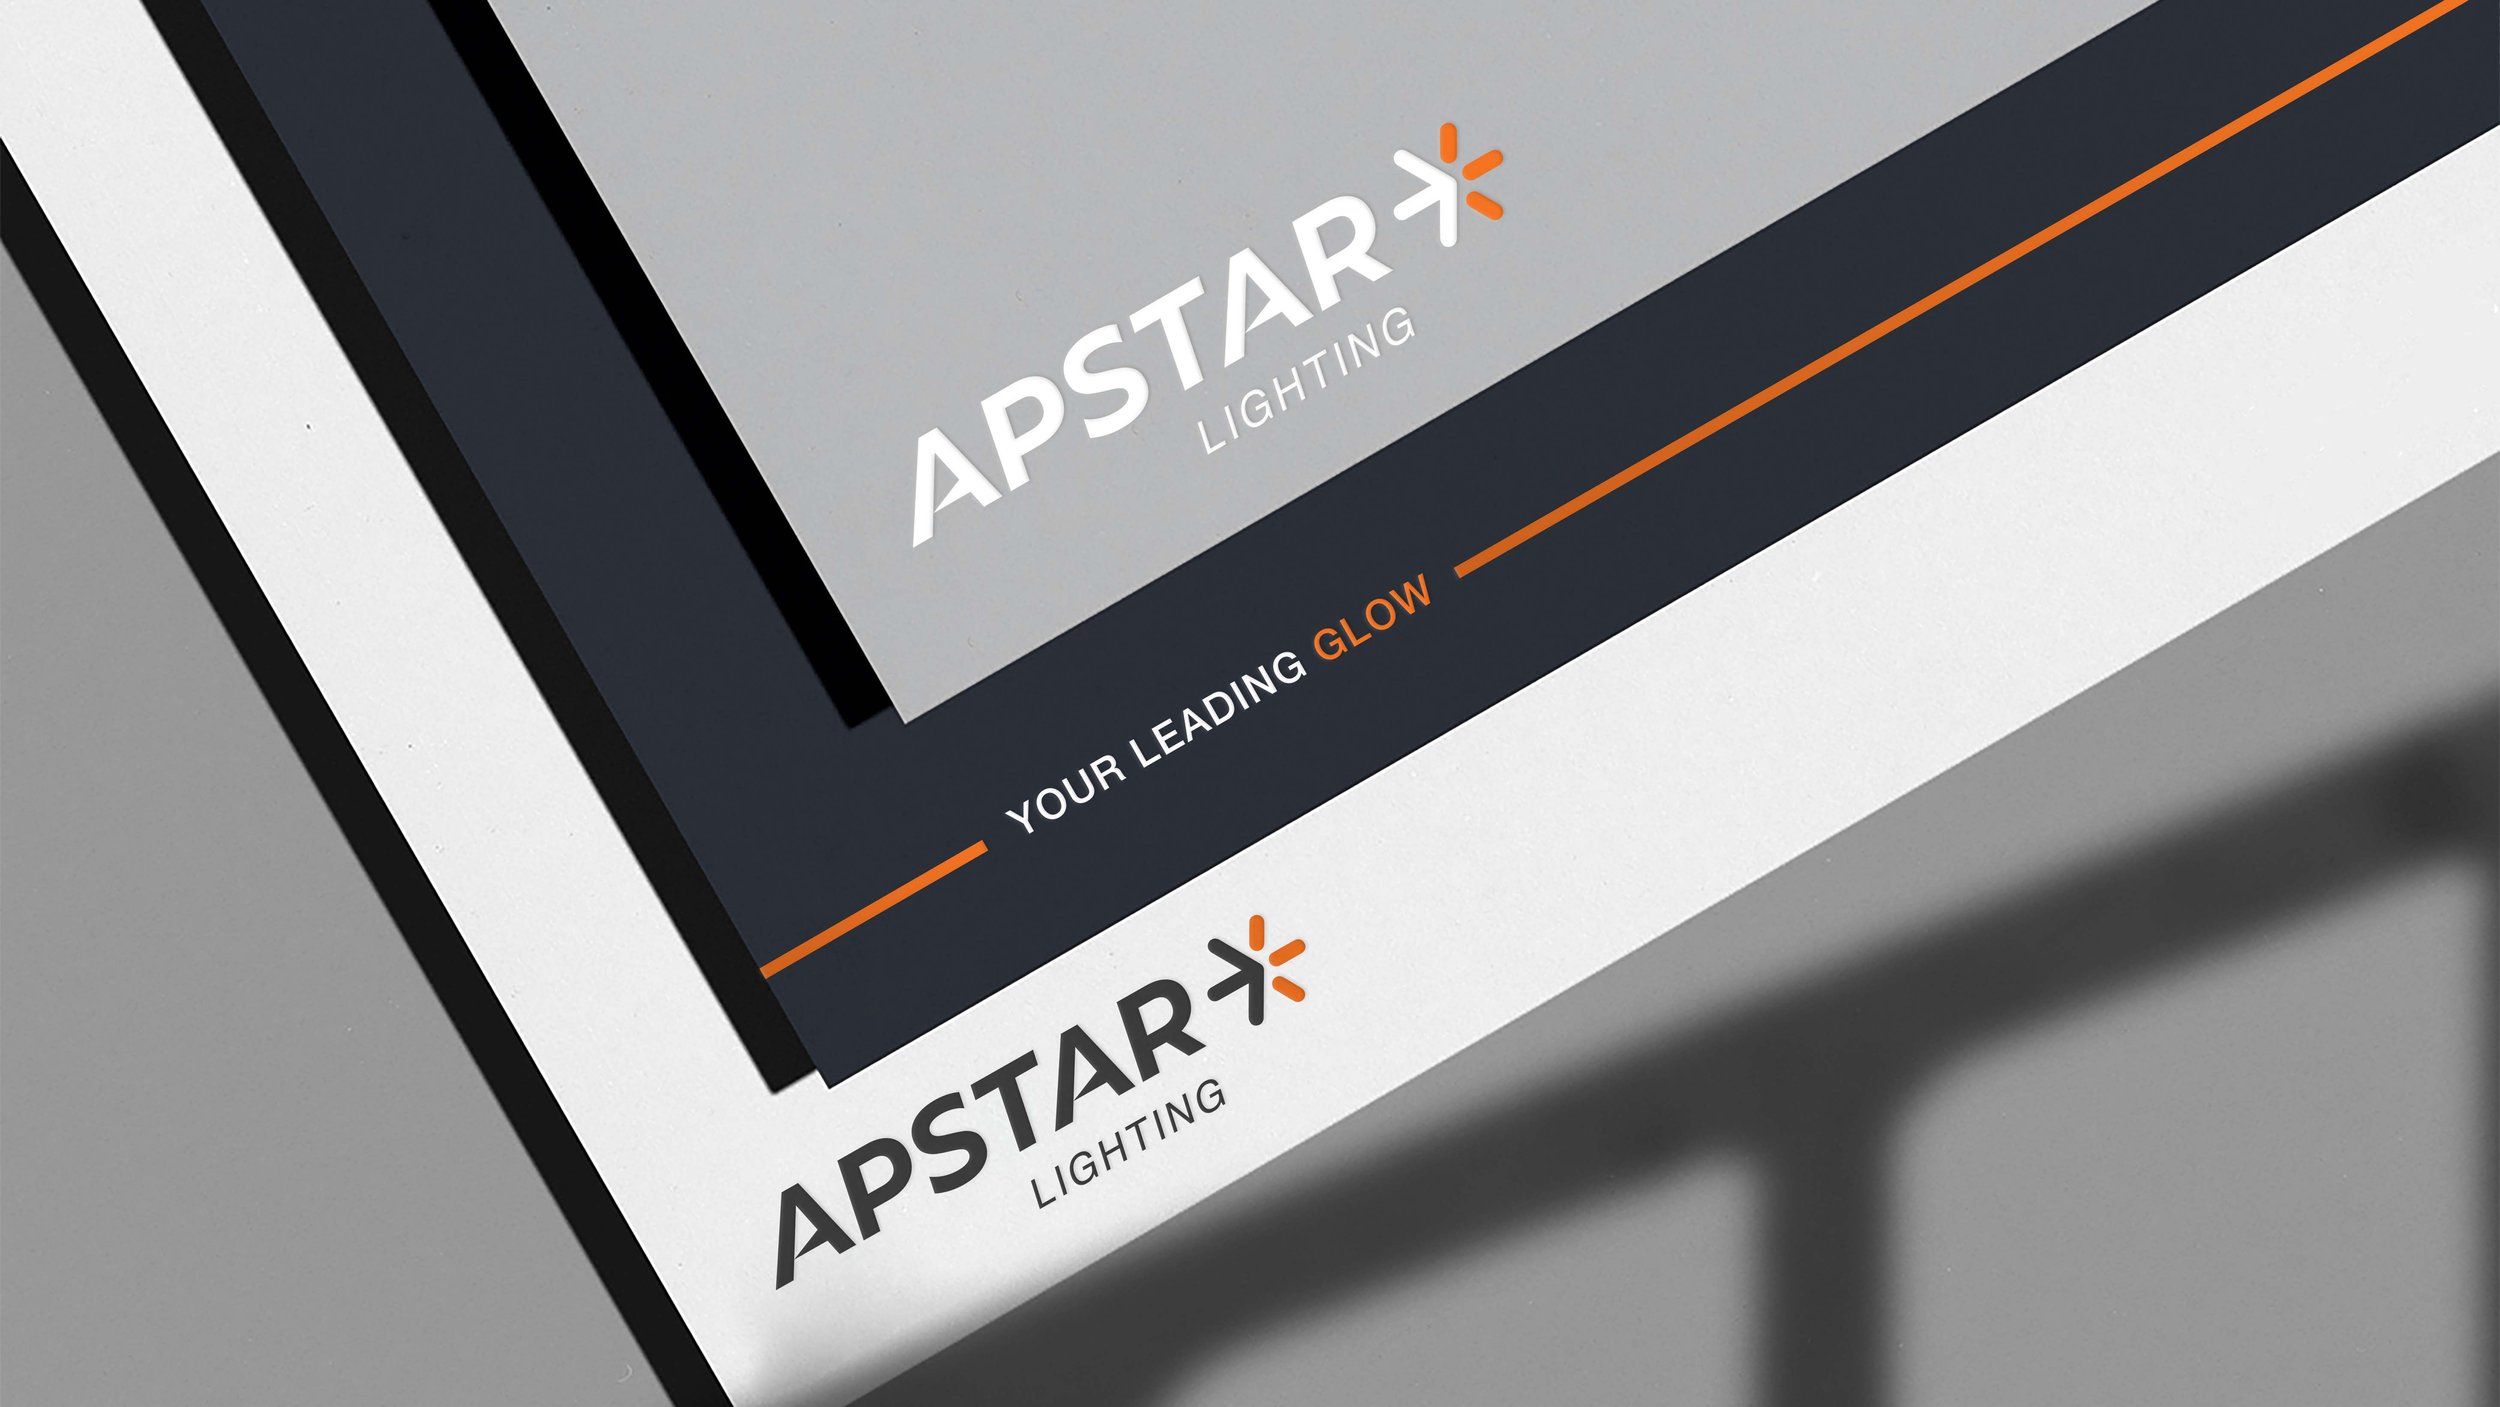 Apstar Lighting_Letterhead.jpg